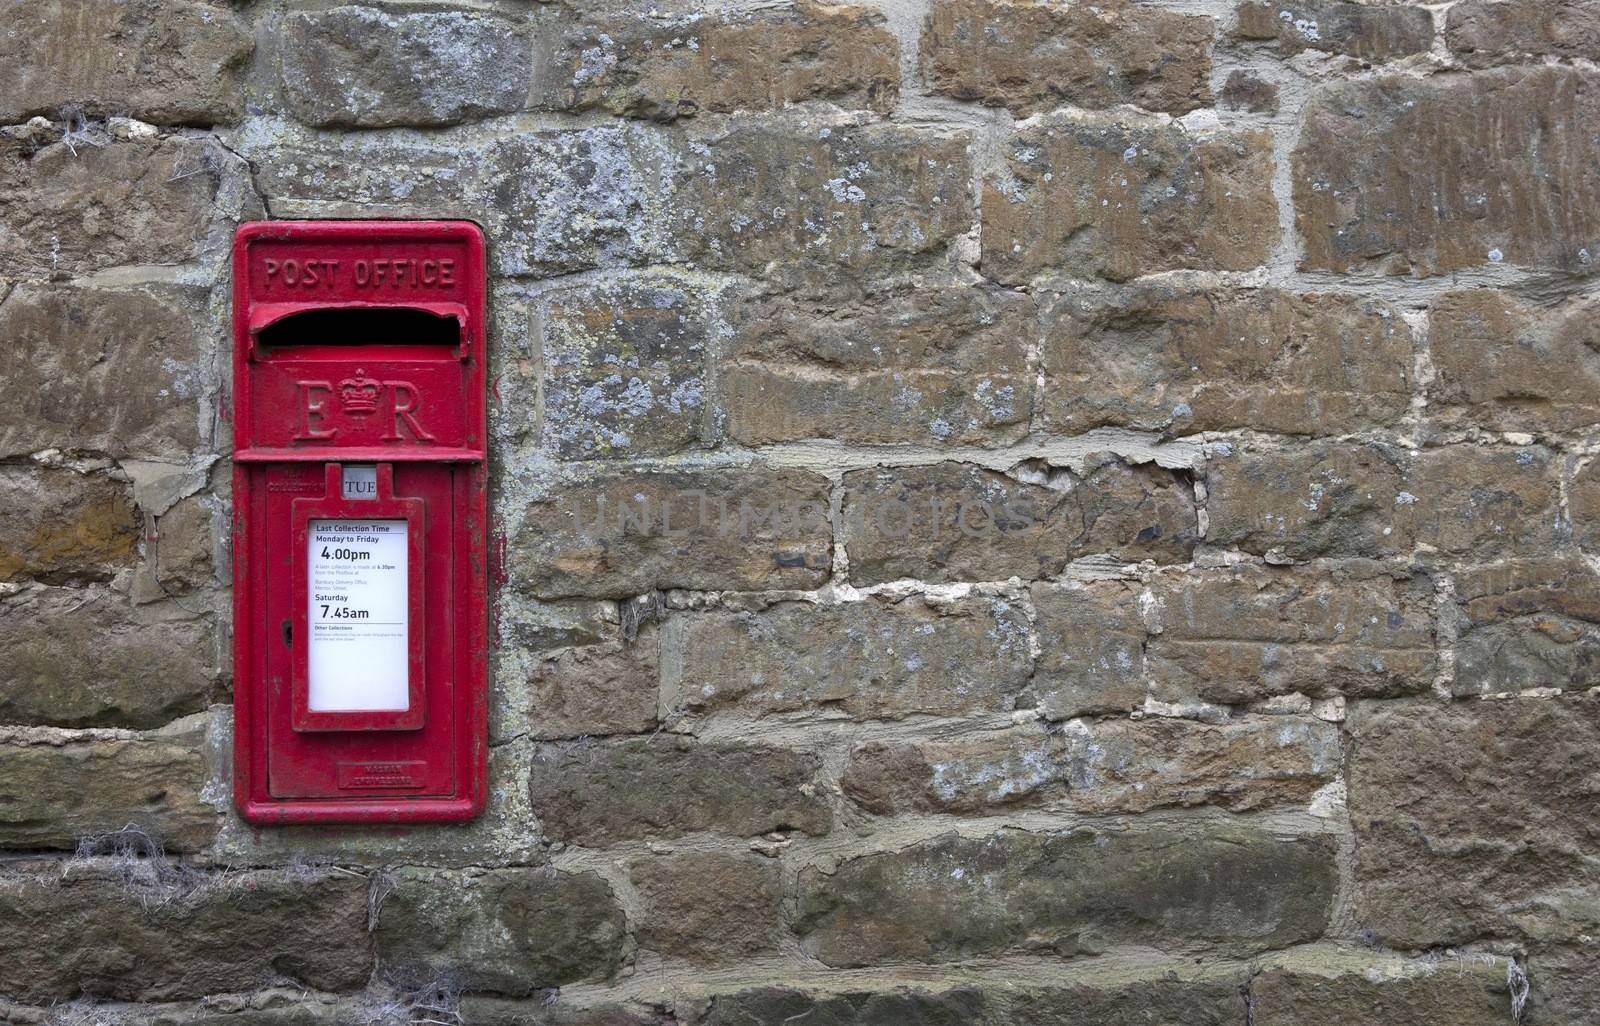 English post box set into a stone wall.